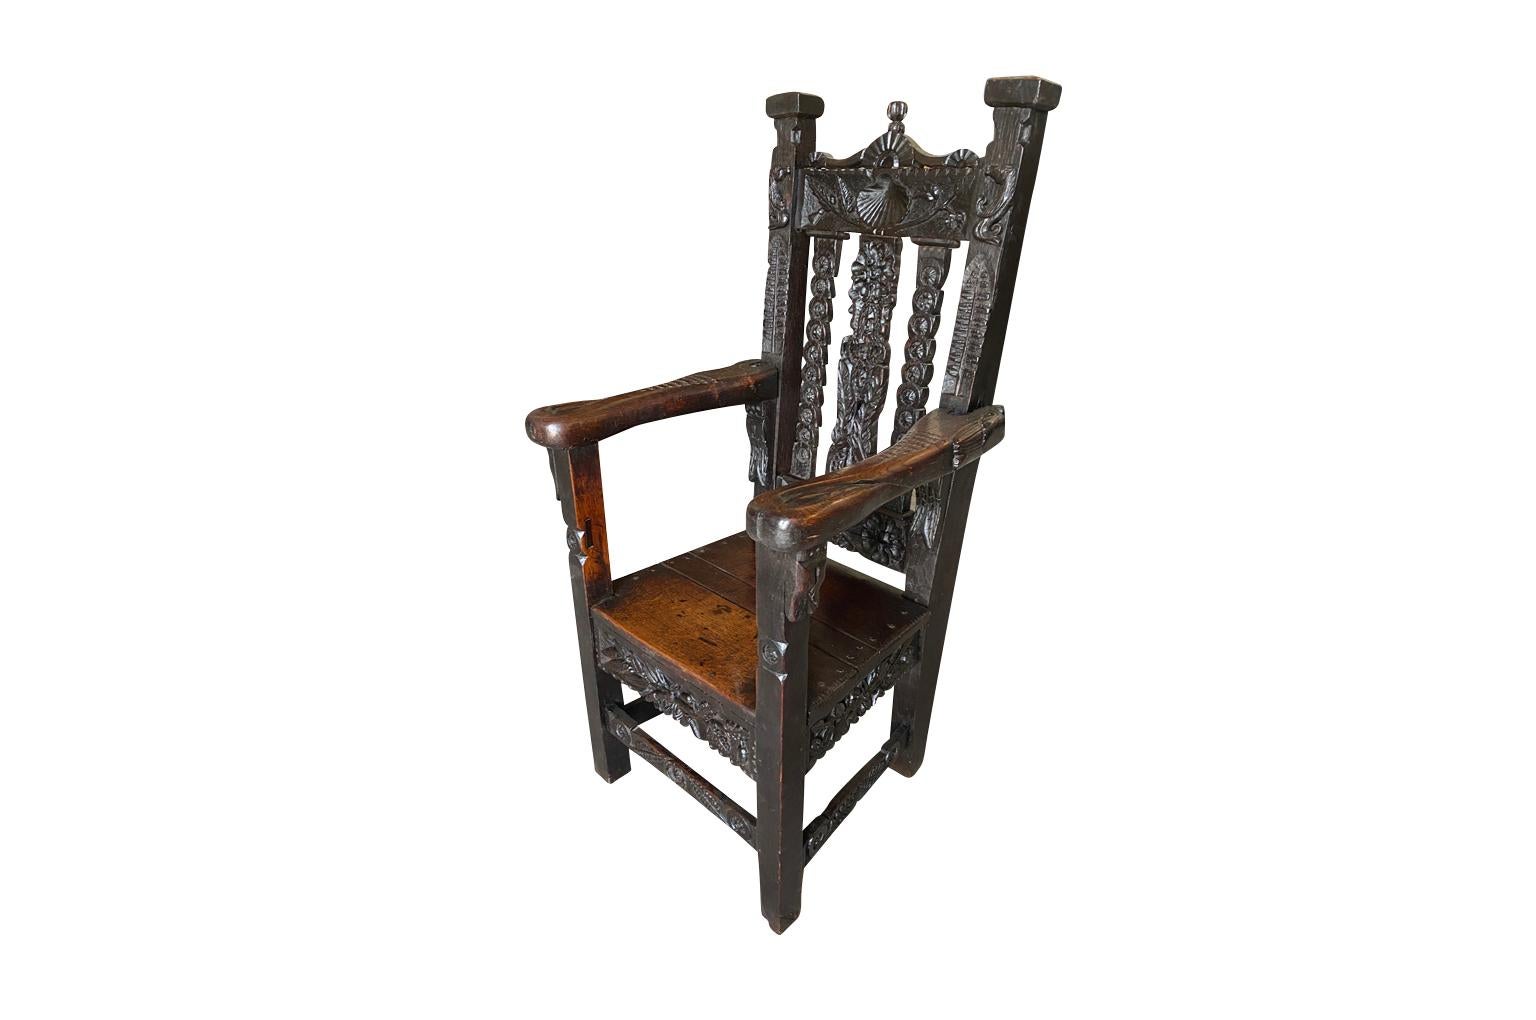 Un très beau fauteuil du 17e siècle, solidement construit en chêne richement teinté. Merveilleux détails de la sculpture. La hauteur du siège est de 17 1/8